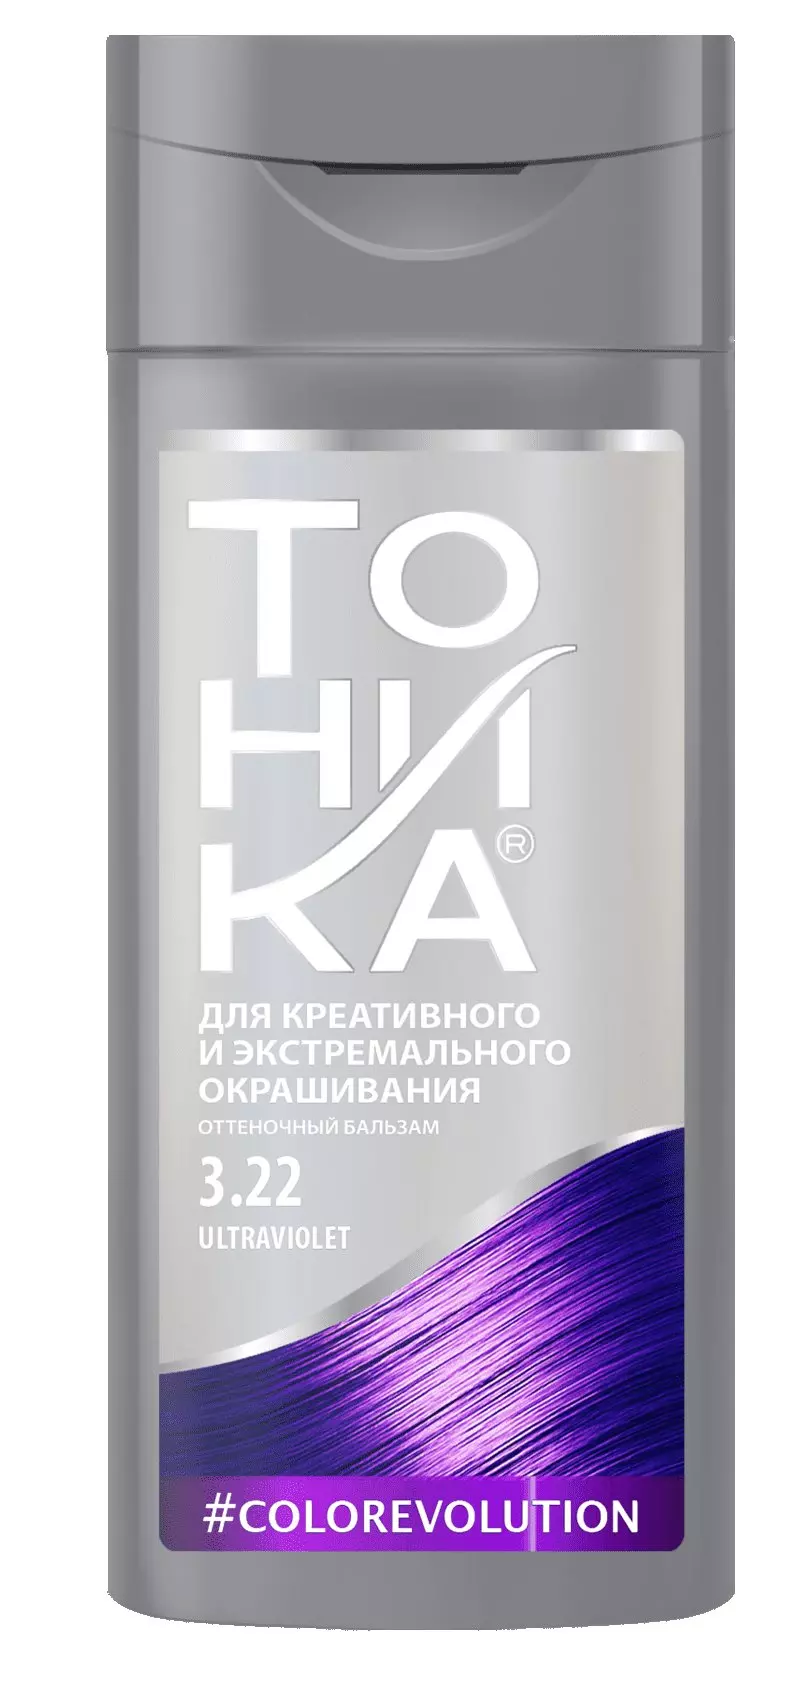 Оттеночный бальзам для волос Тоника 3.22, ultraviolet, 150 гр